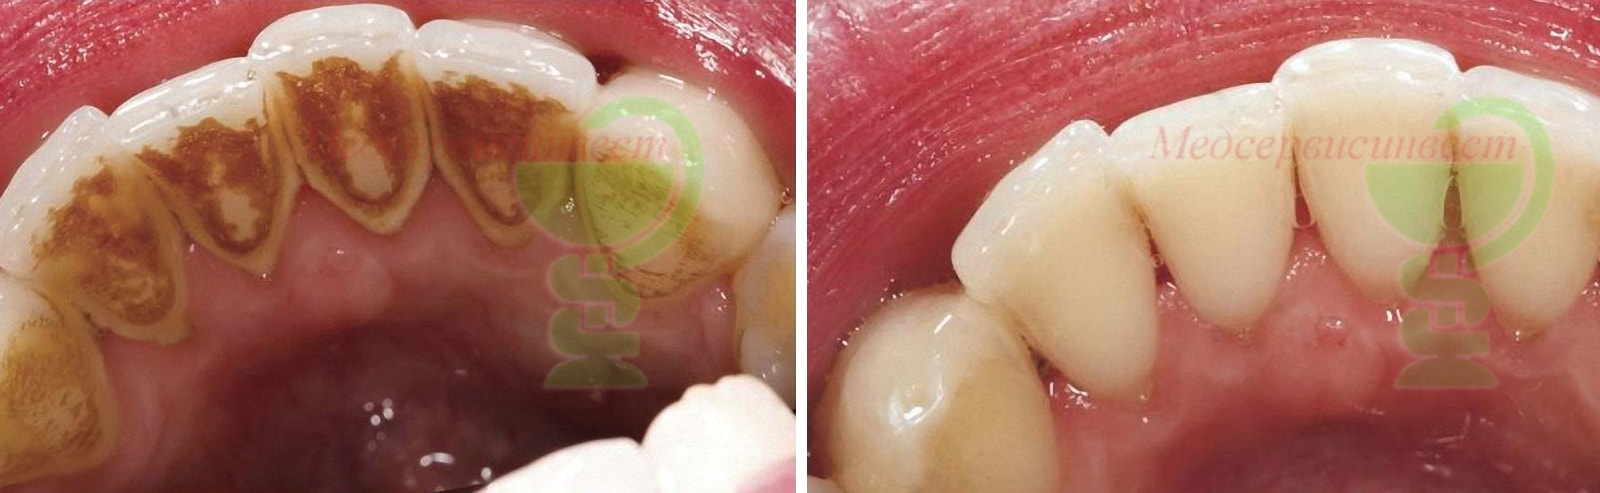 Шинирование зубов цены стекловолоконной лентой лечение десен фото